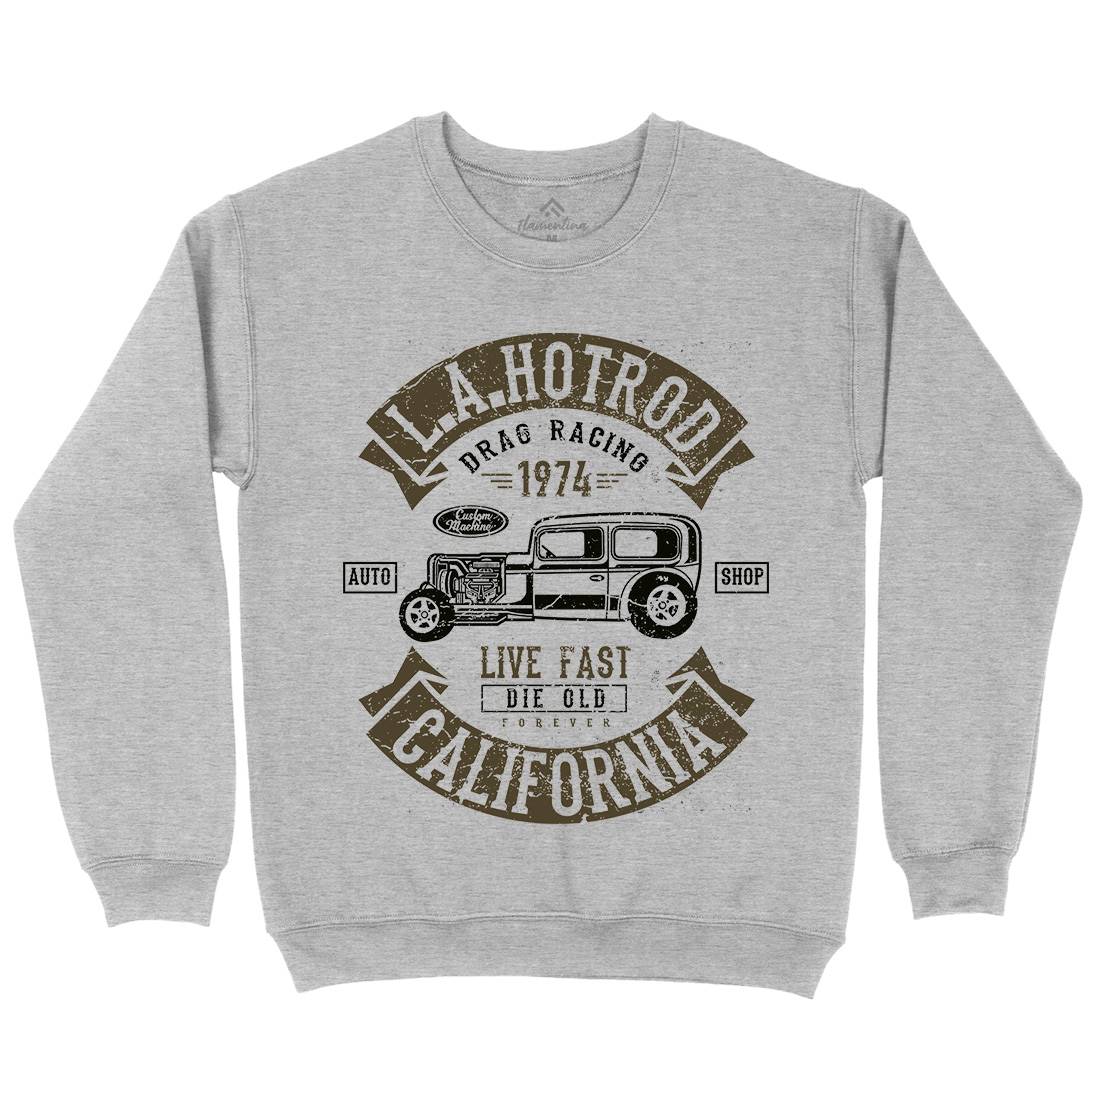 La Hotrod Mens Crew Neck Sweatshirt Cars A080